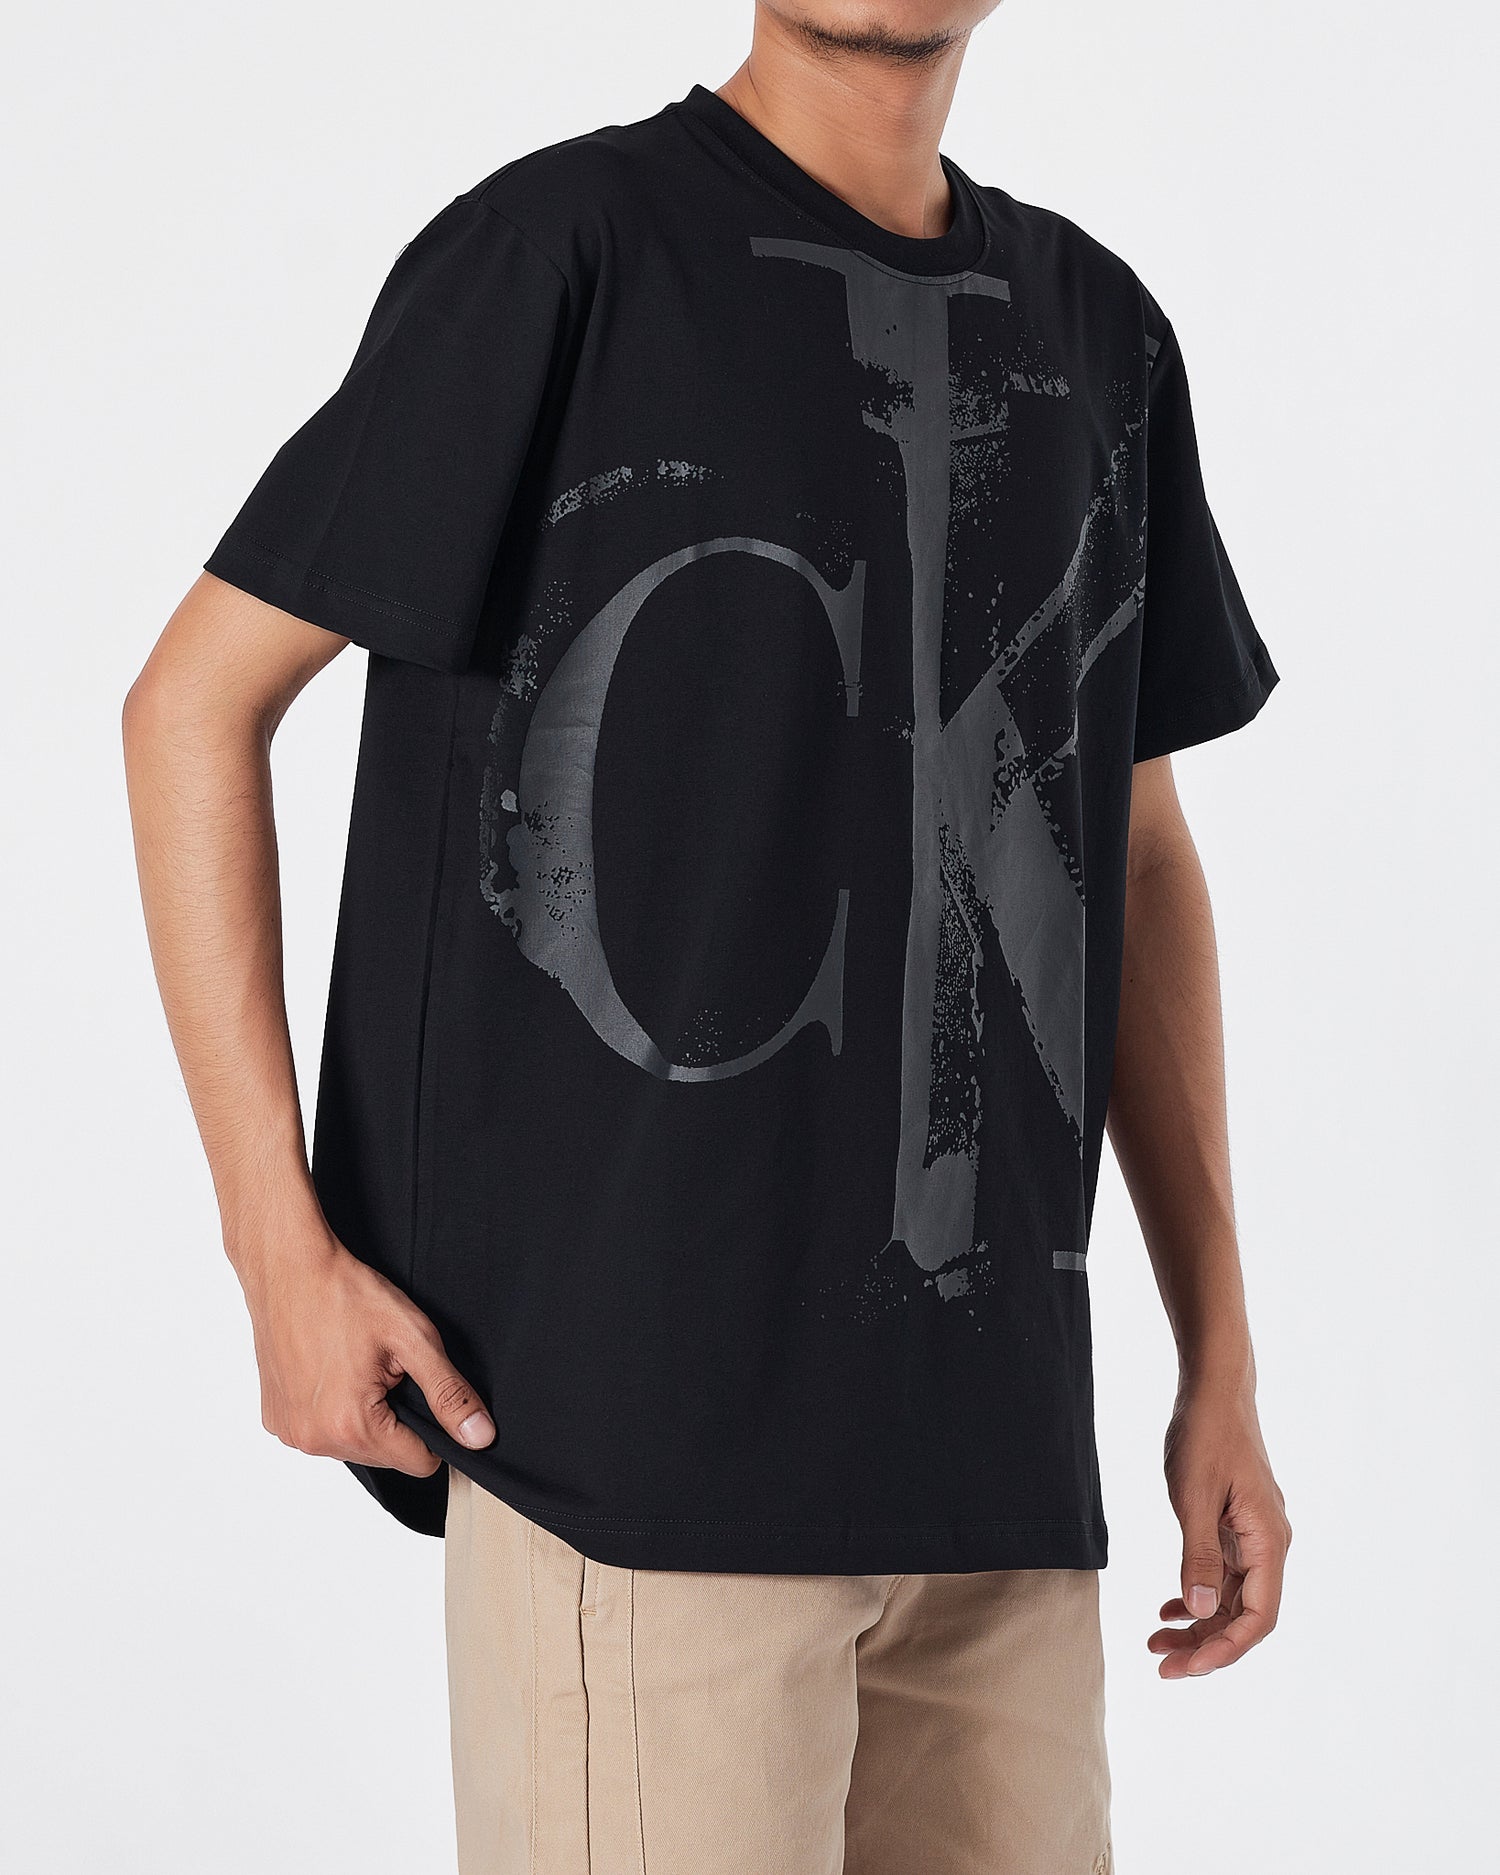 CK Logo Printed Men Black  T-Shirt 16.90